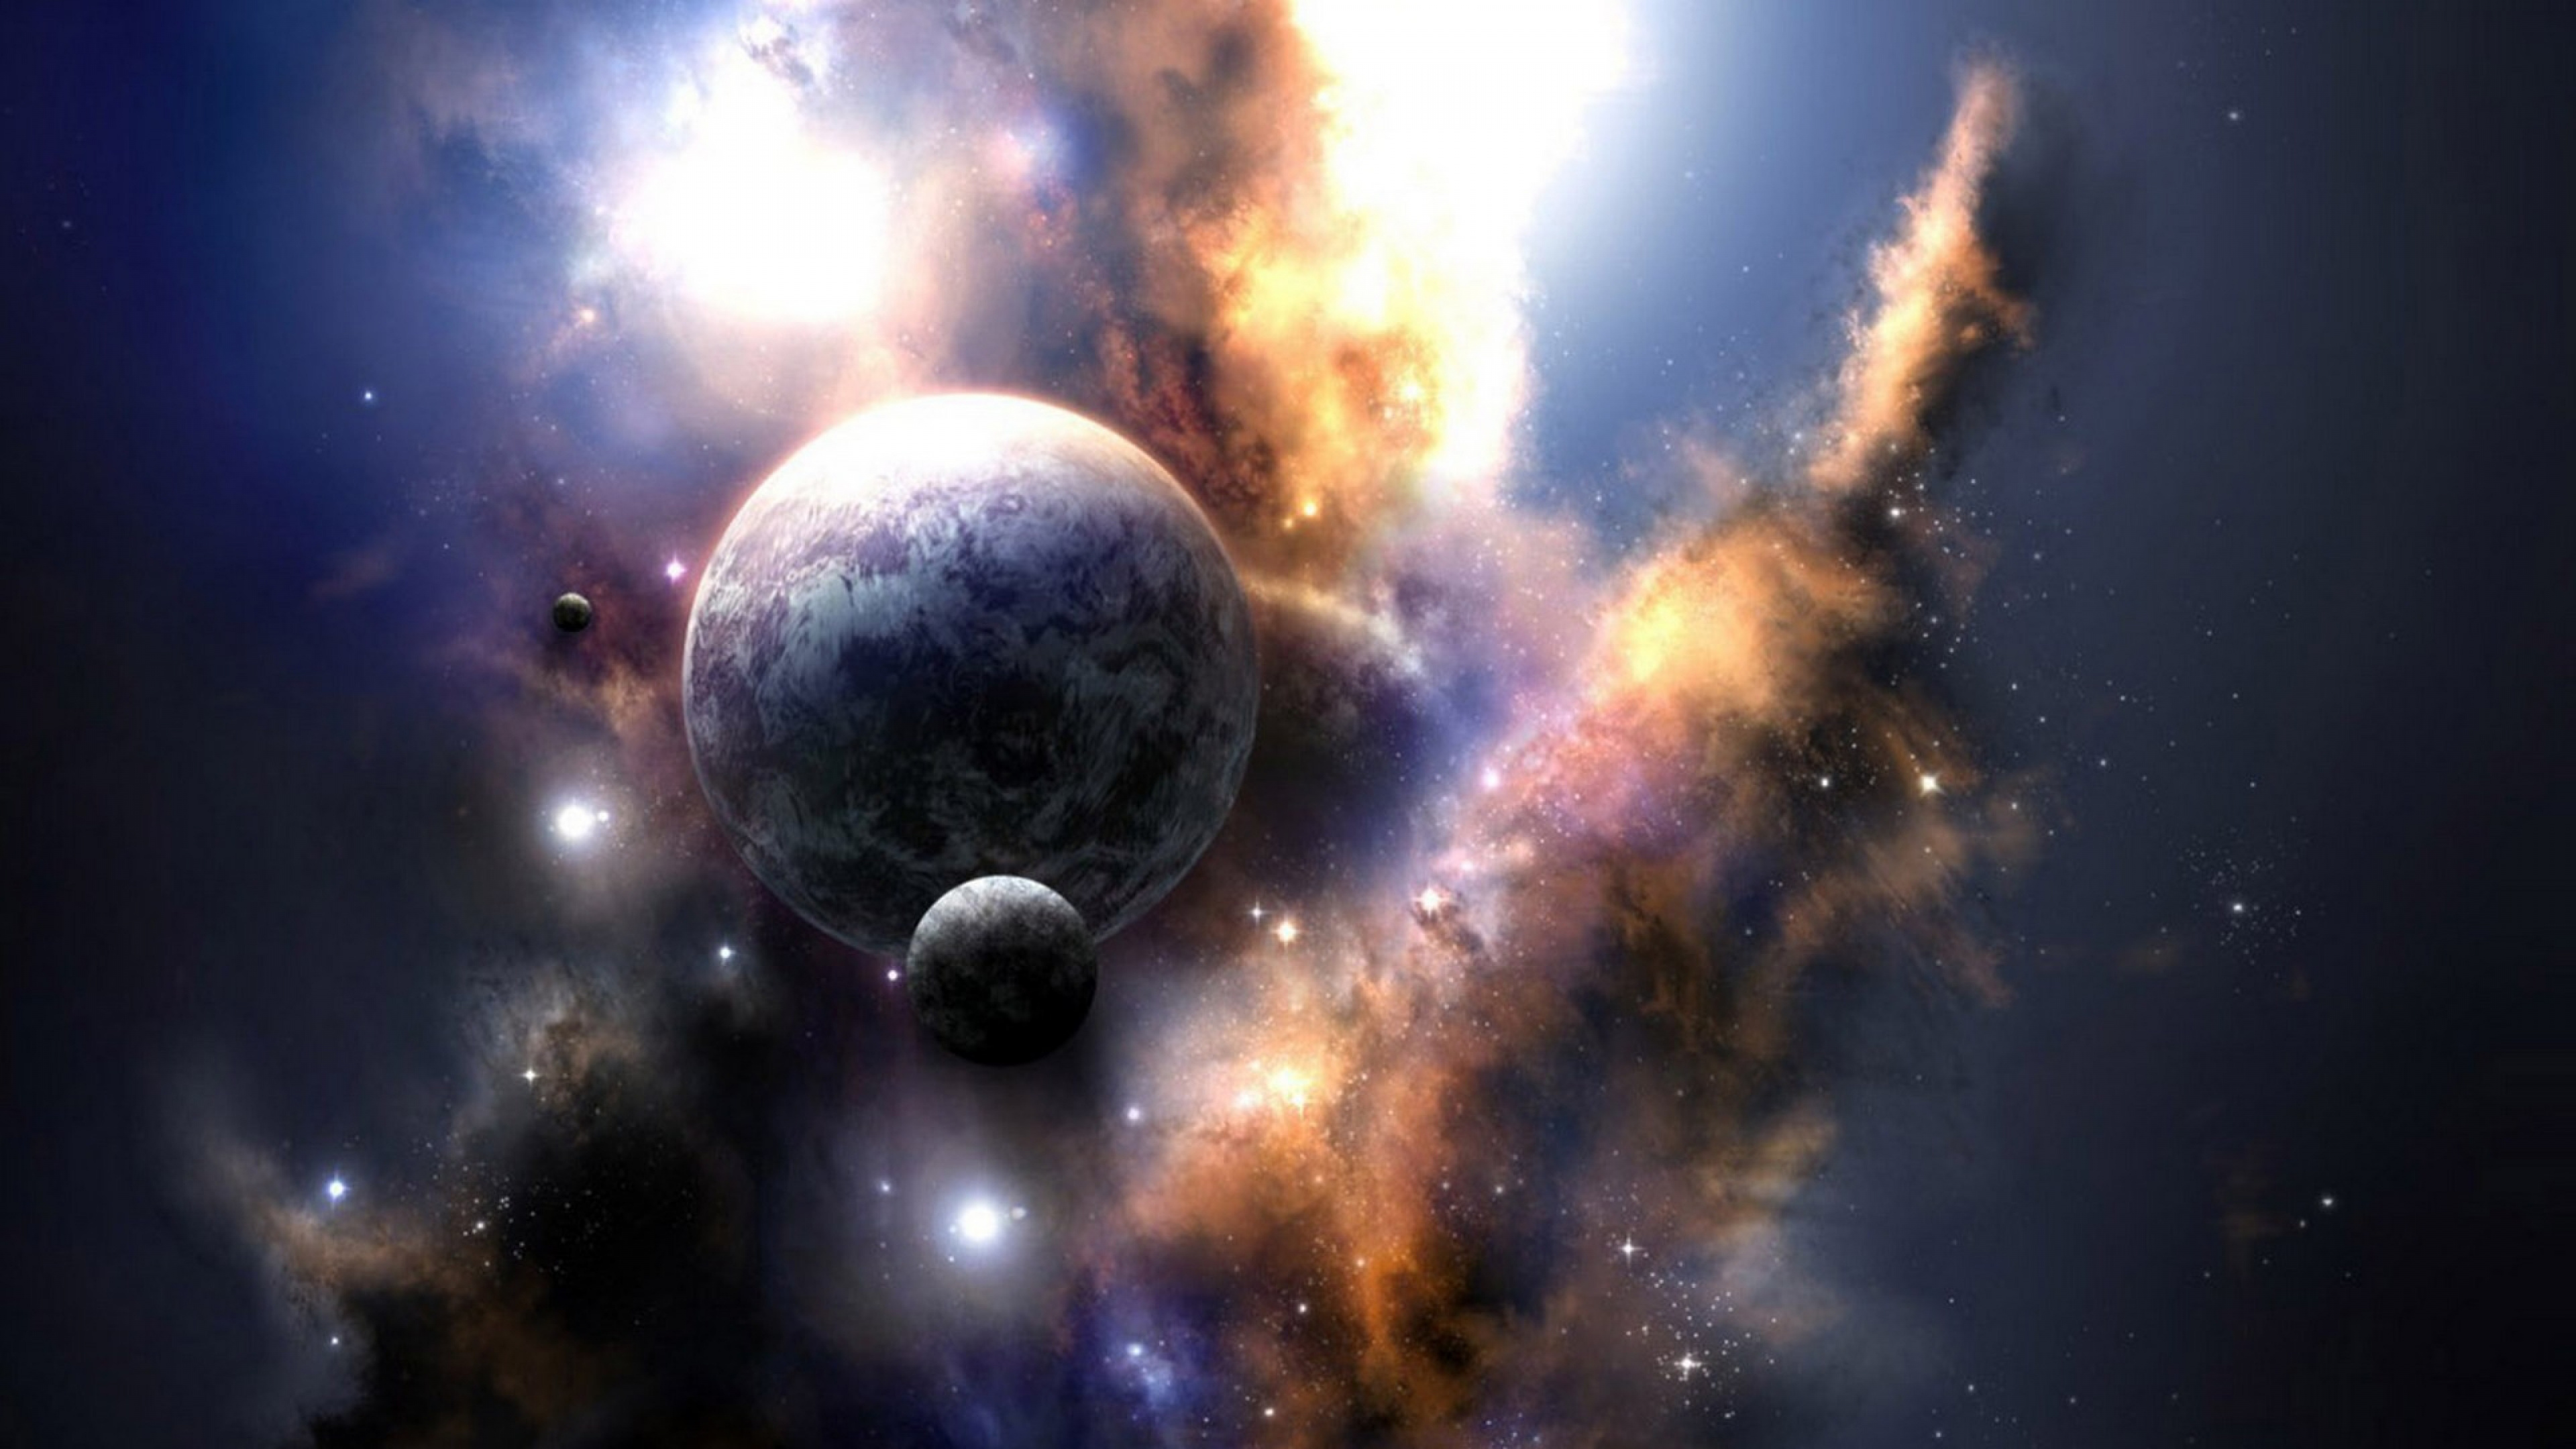 Universum, Weltraum, Astronomisches Objekt, Atmosphäre, Raum. Wallpaper in 3840x2160 Resolution